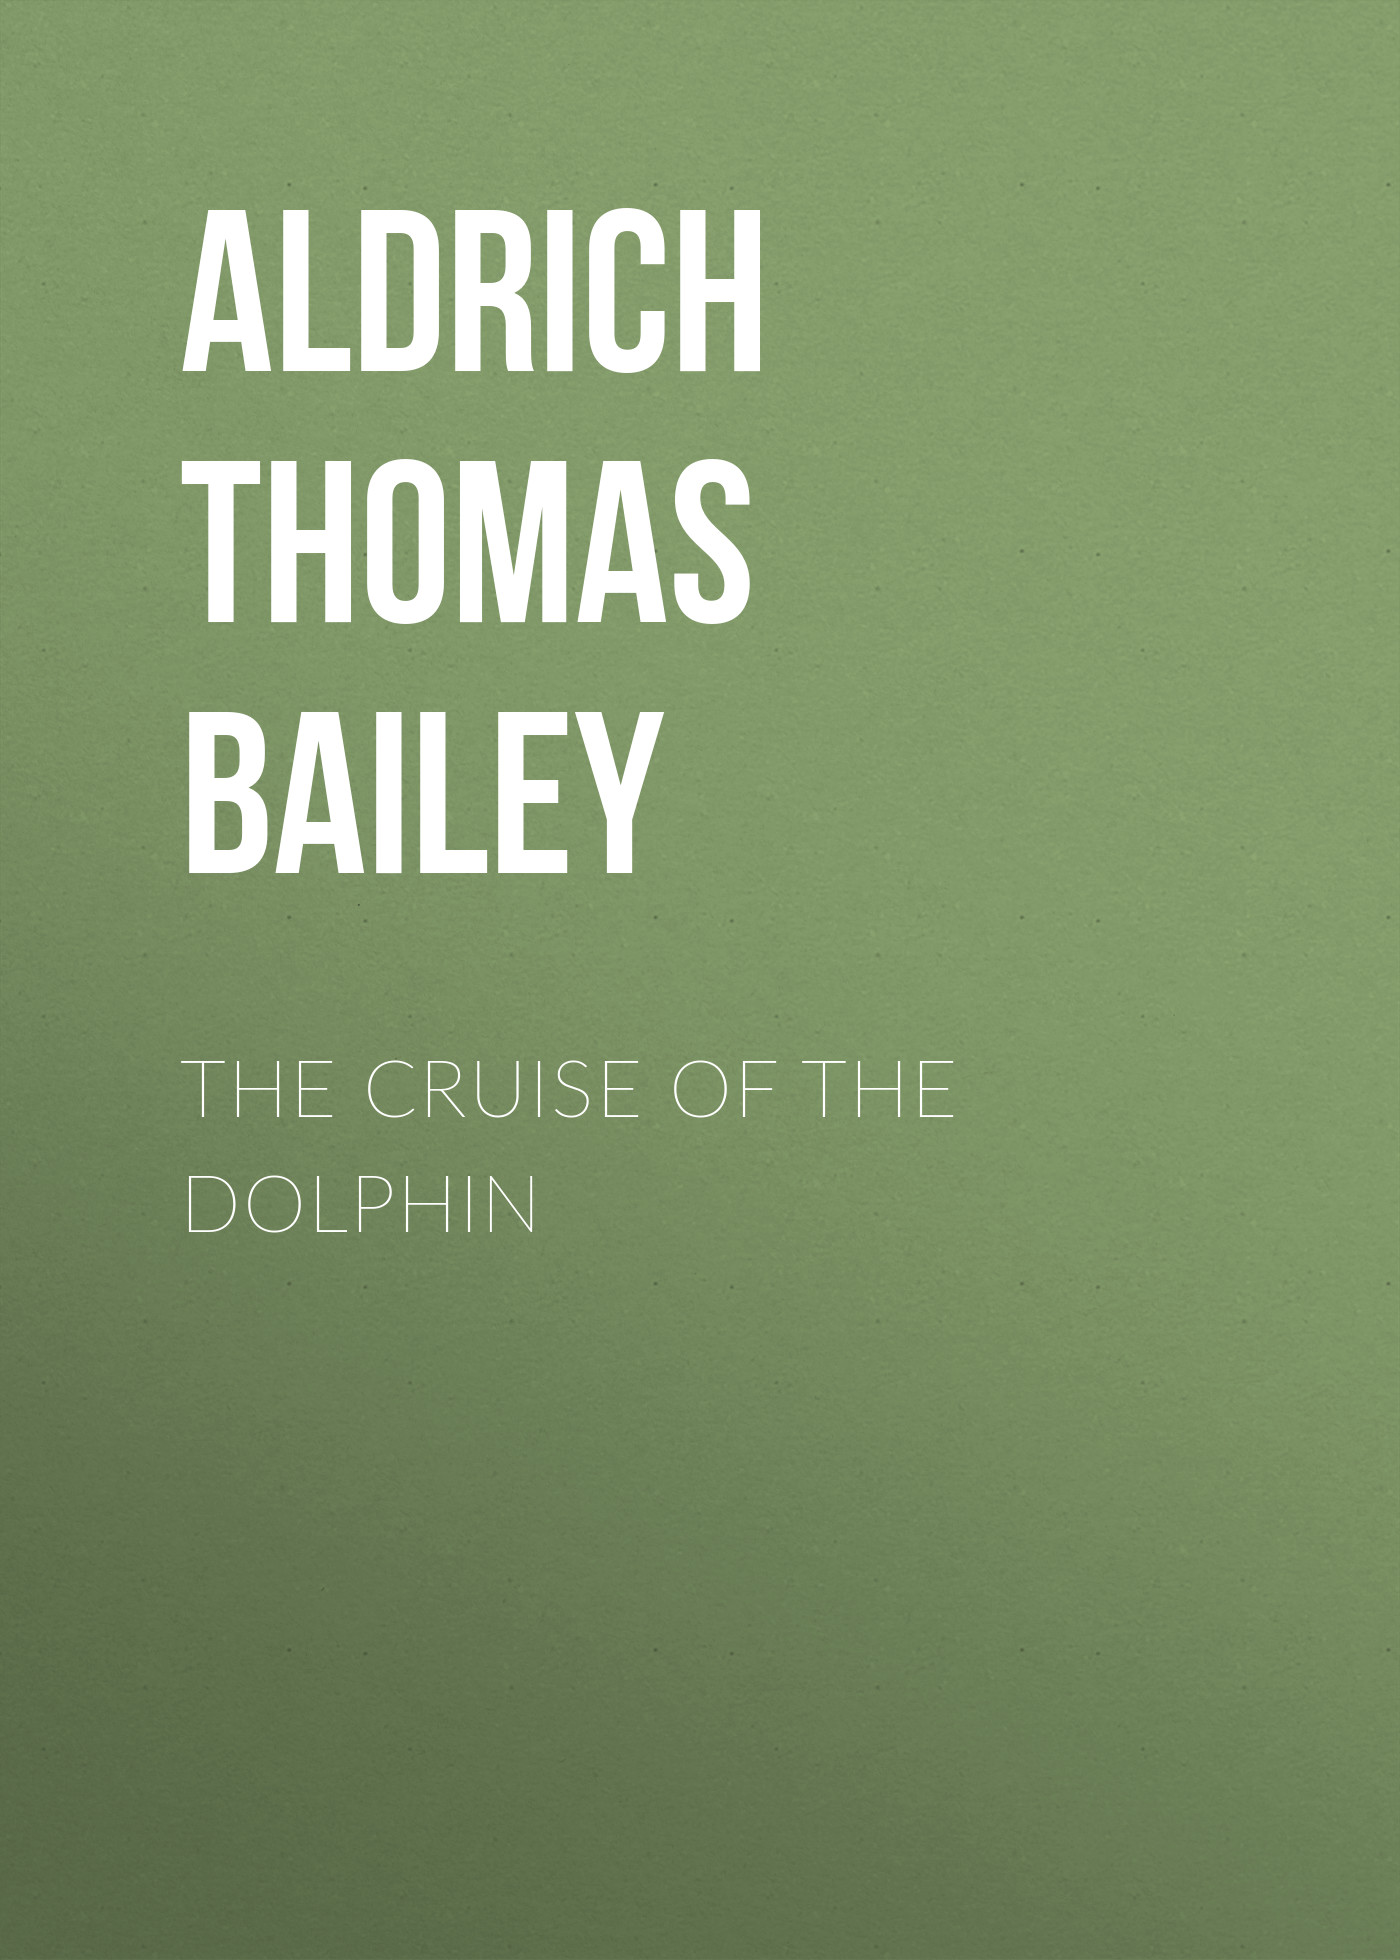 Книга The Cruise of the Dolphin из серии , созданная Thomas Aldrich, может относится к жанру Зарубежная классика, Литература 19 века, Зарубежная старинная литература. Стоимость электронной книги The Cruise of the Dolphin с идентификатором 36364230 составляет 0 руб.